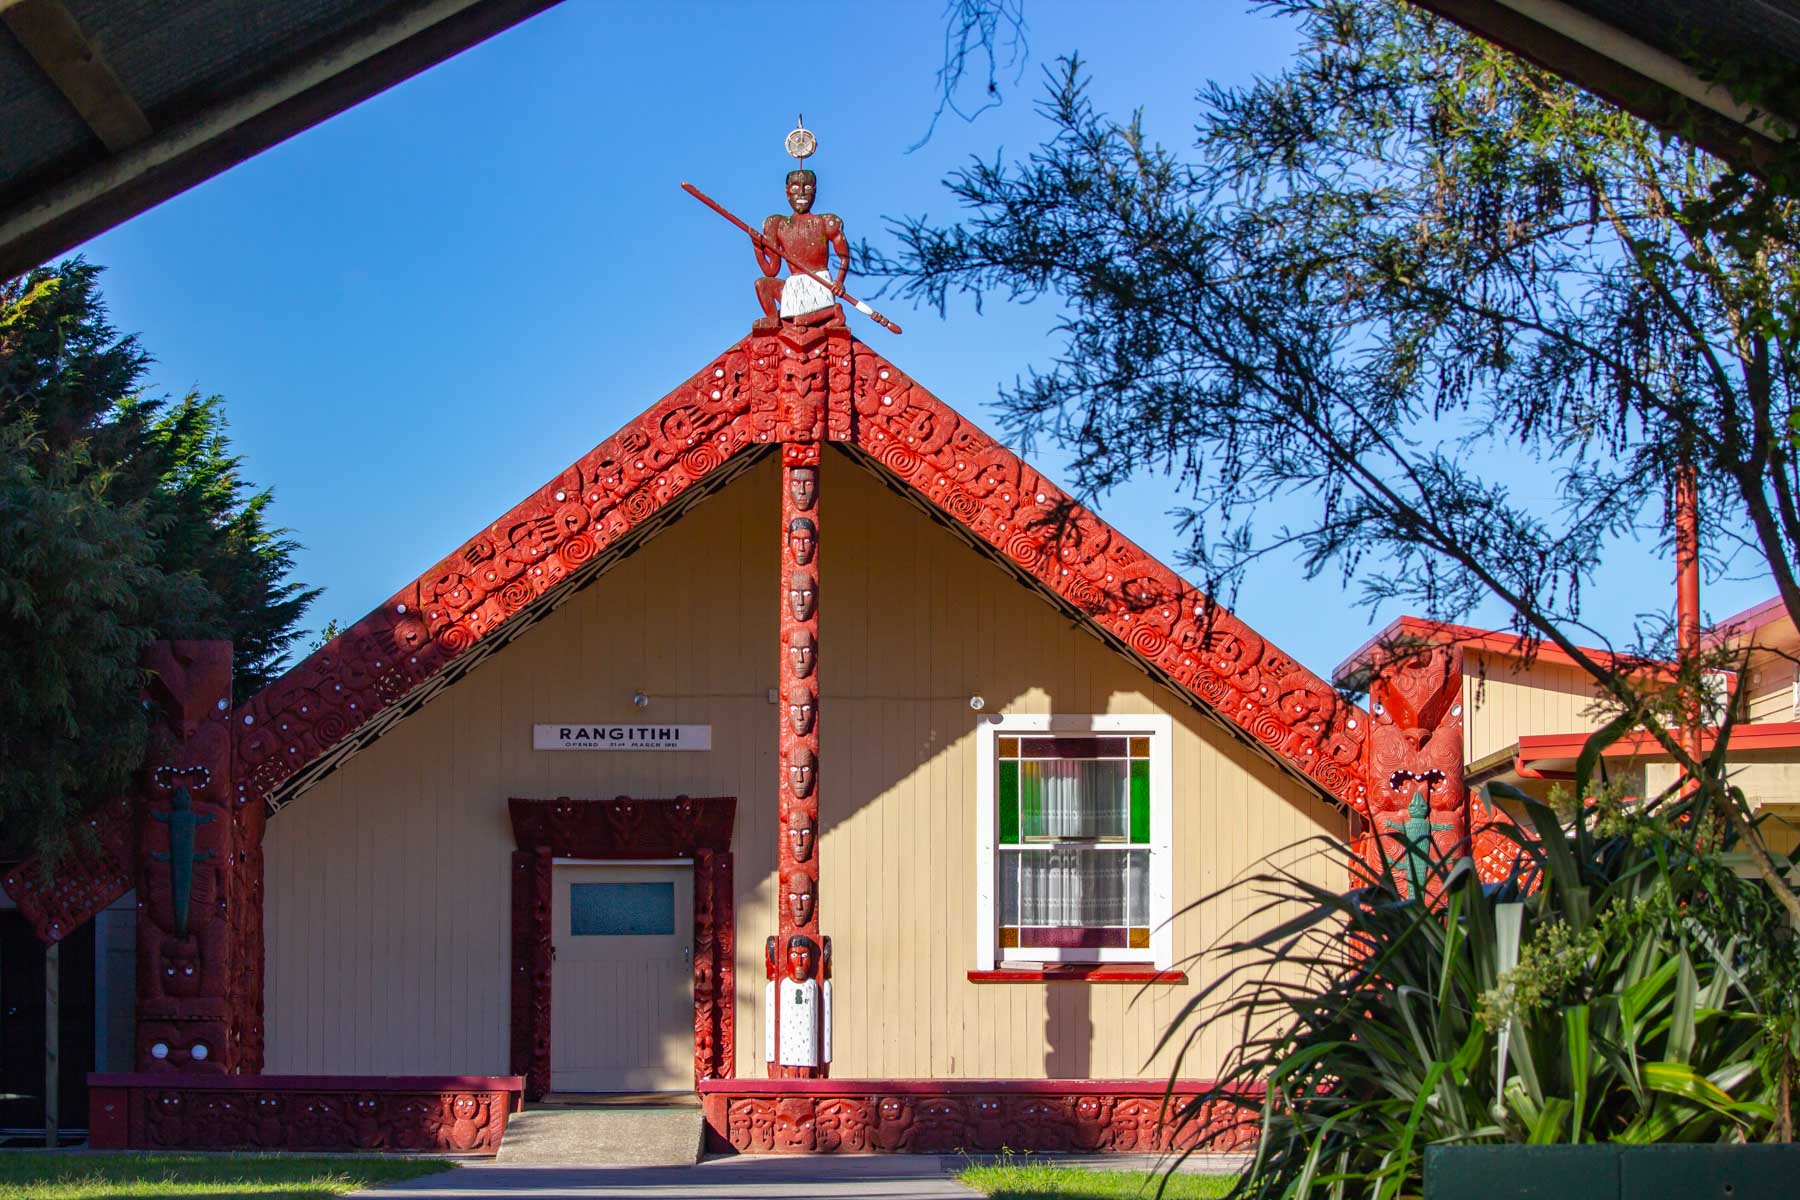 Façade d’un bâtiment de forme triangulaire dont la structure présente des sculptures traditionnelles māories peintes en rouge.